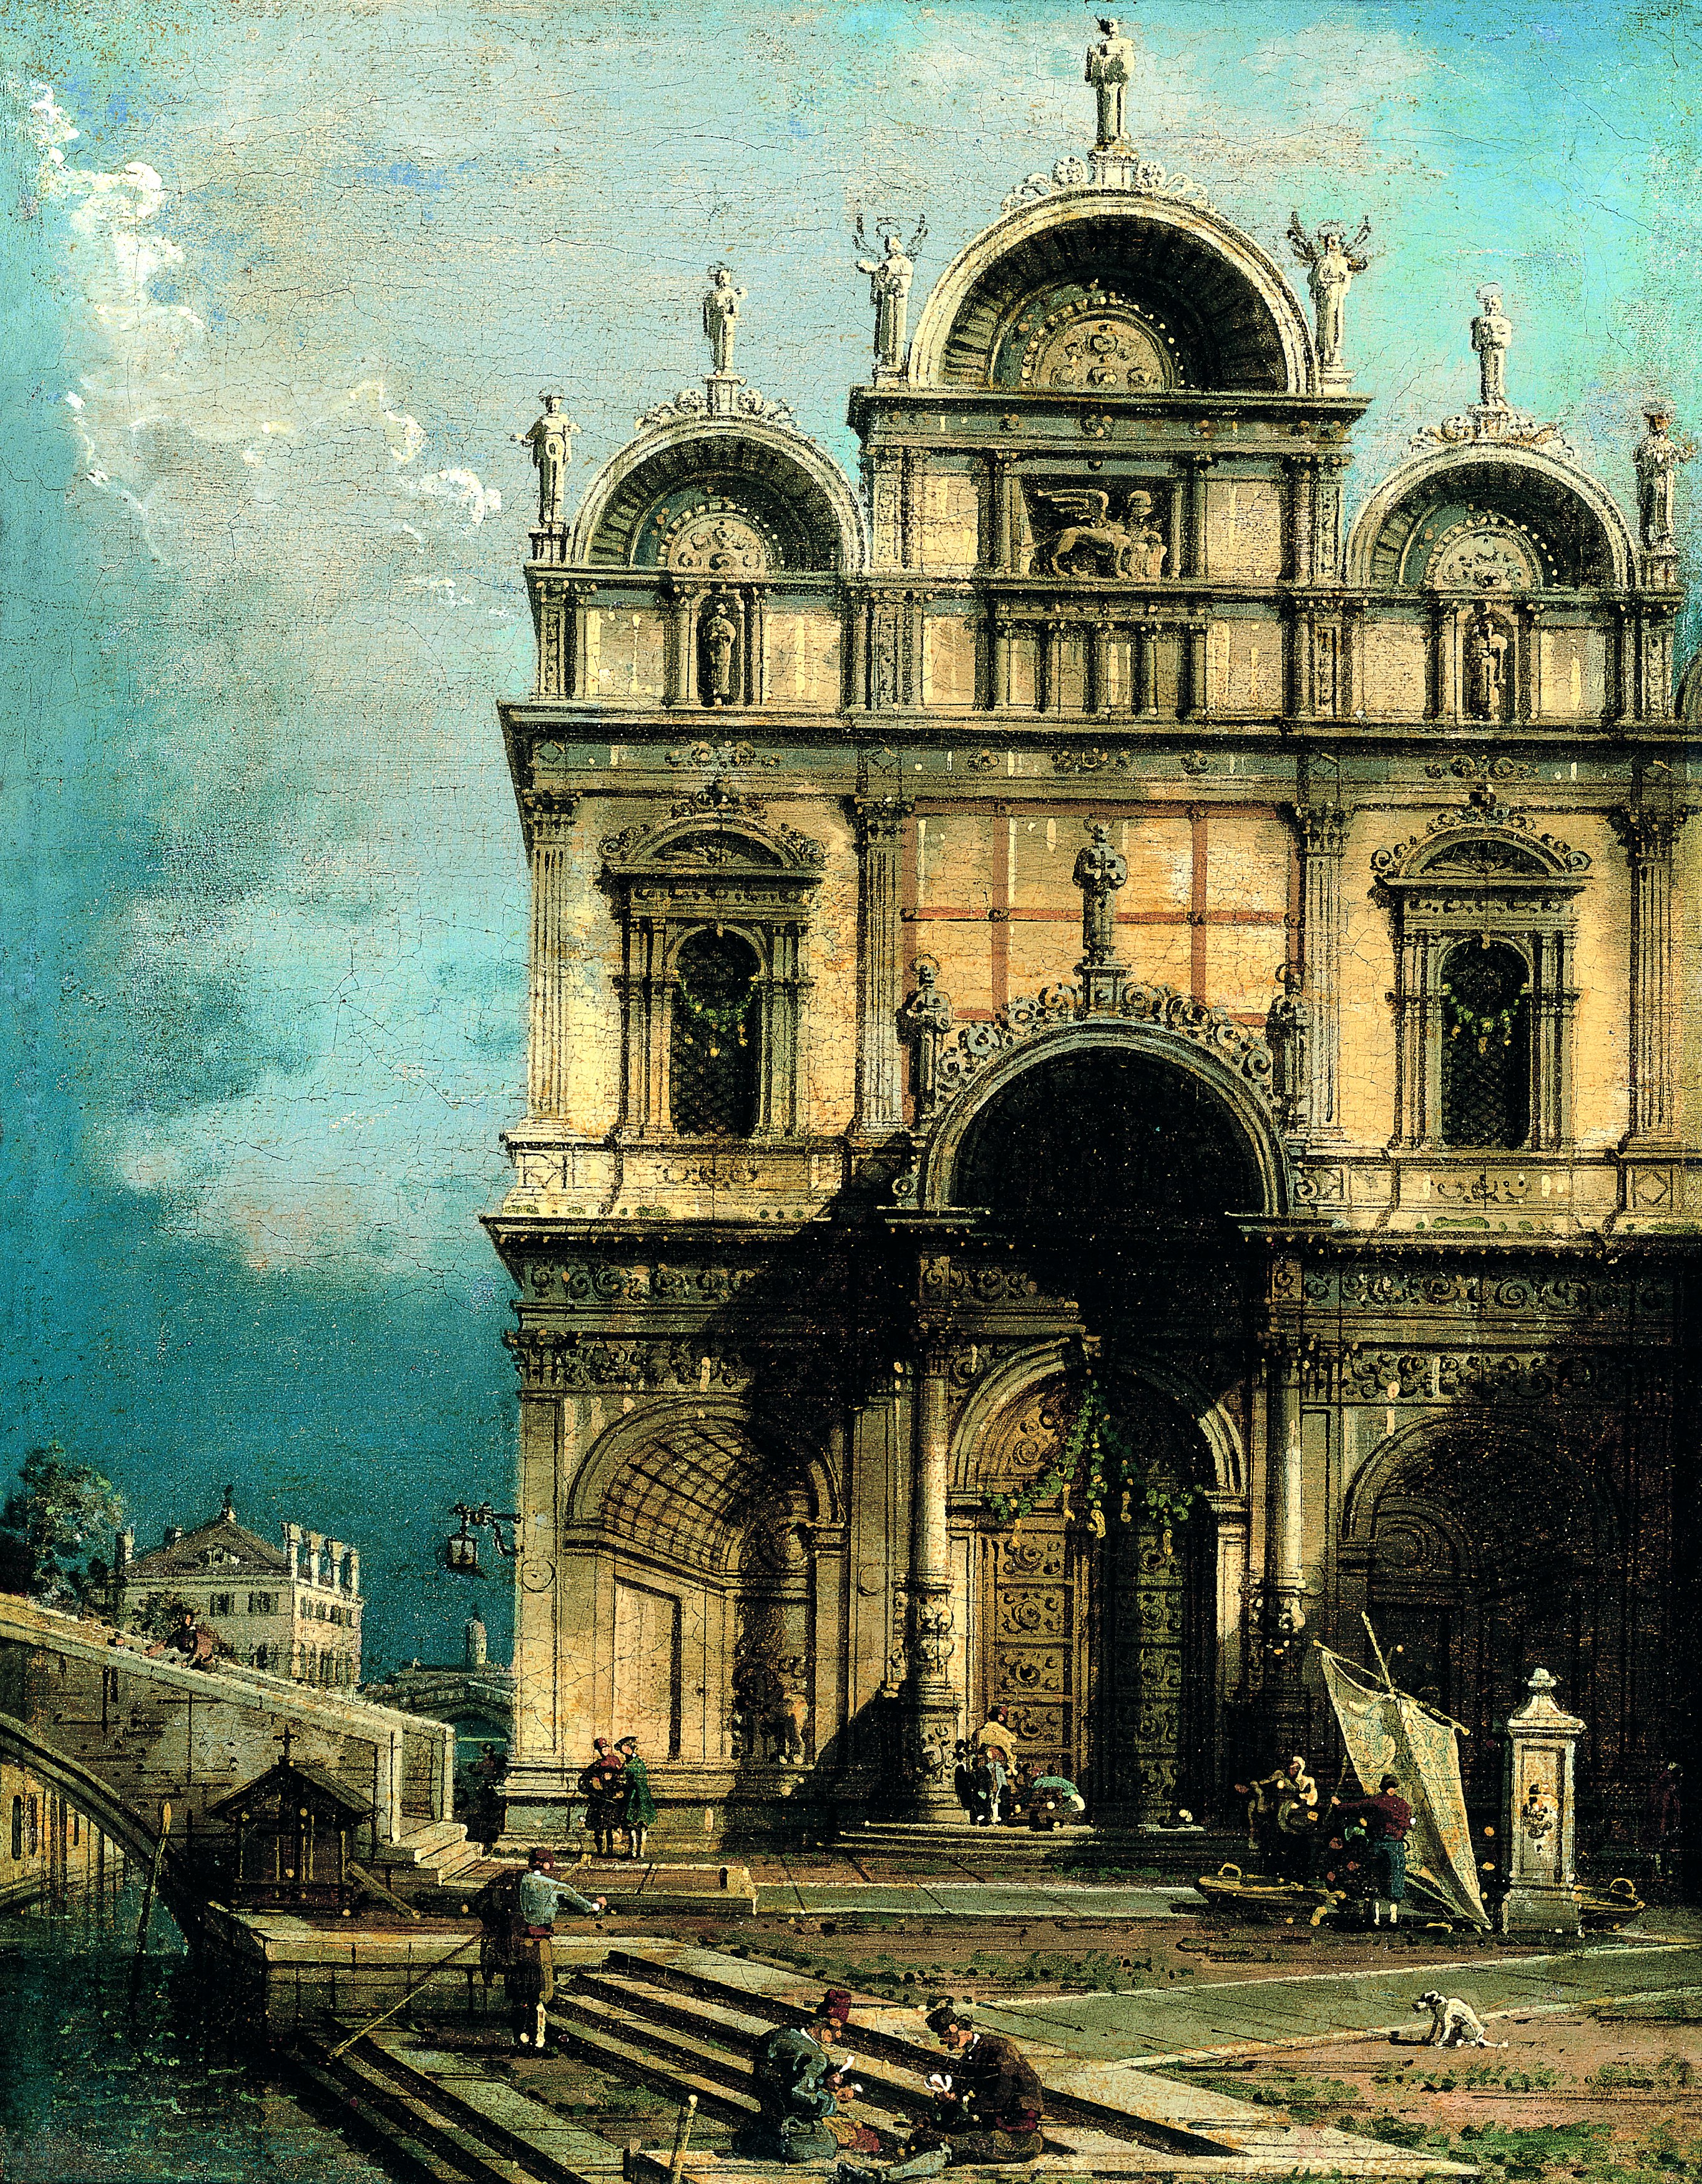 The School of San Marco. La Escuela de San Marco, c. 1765